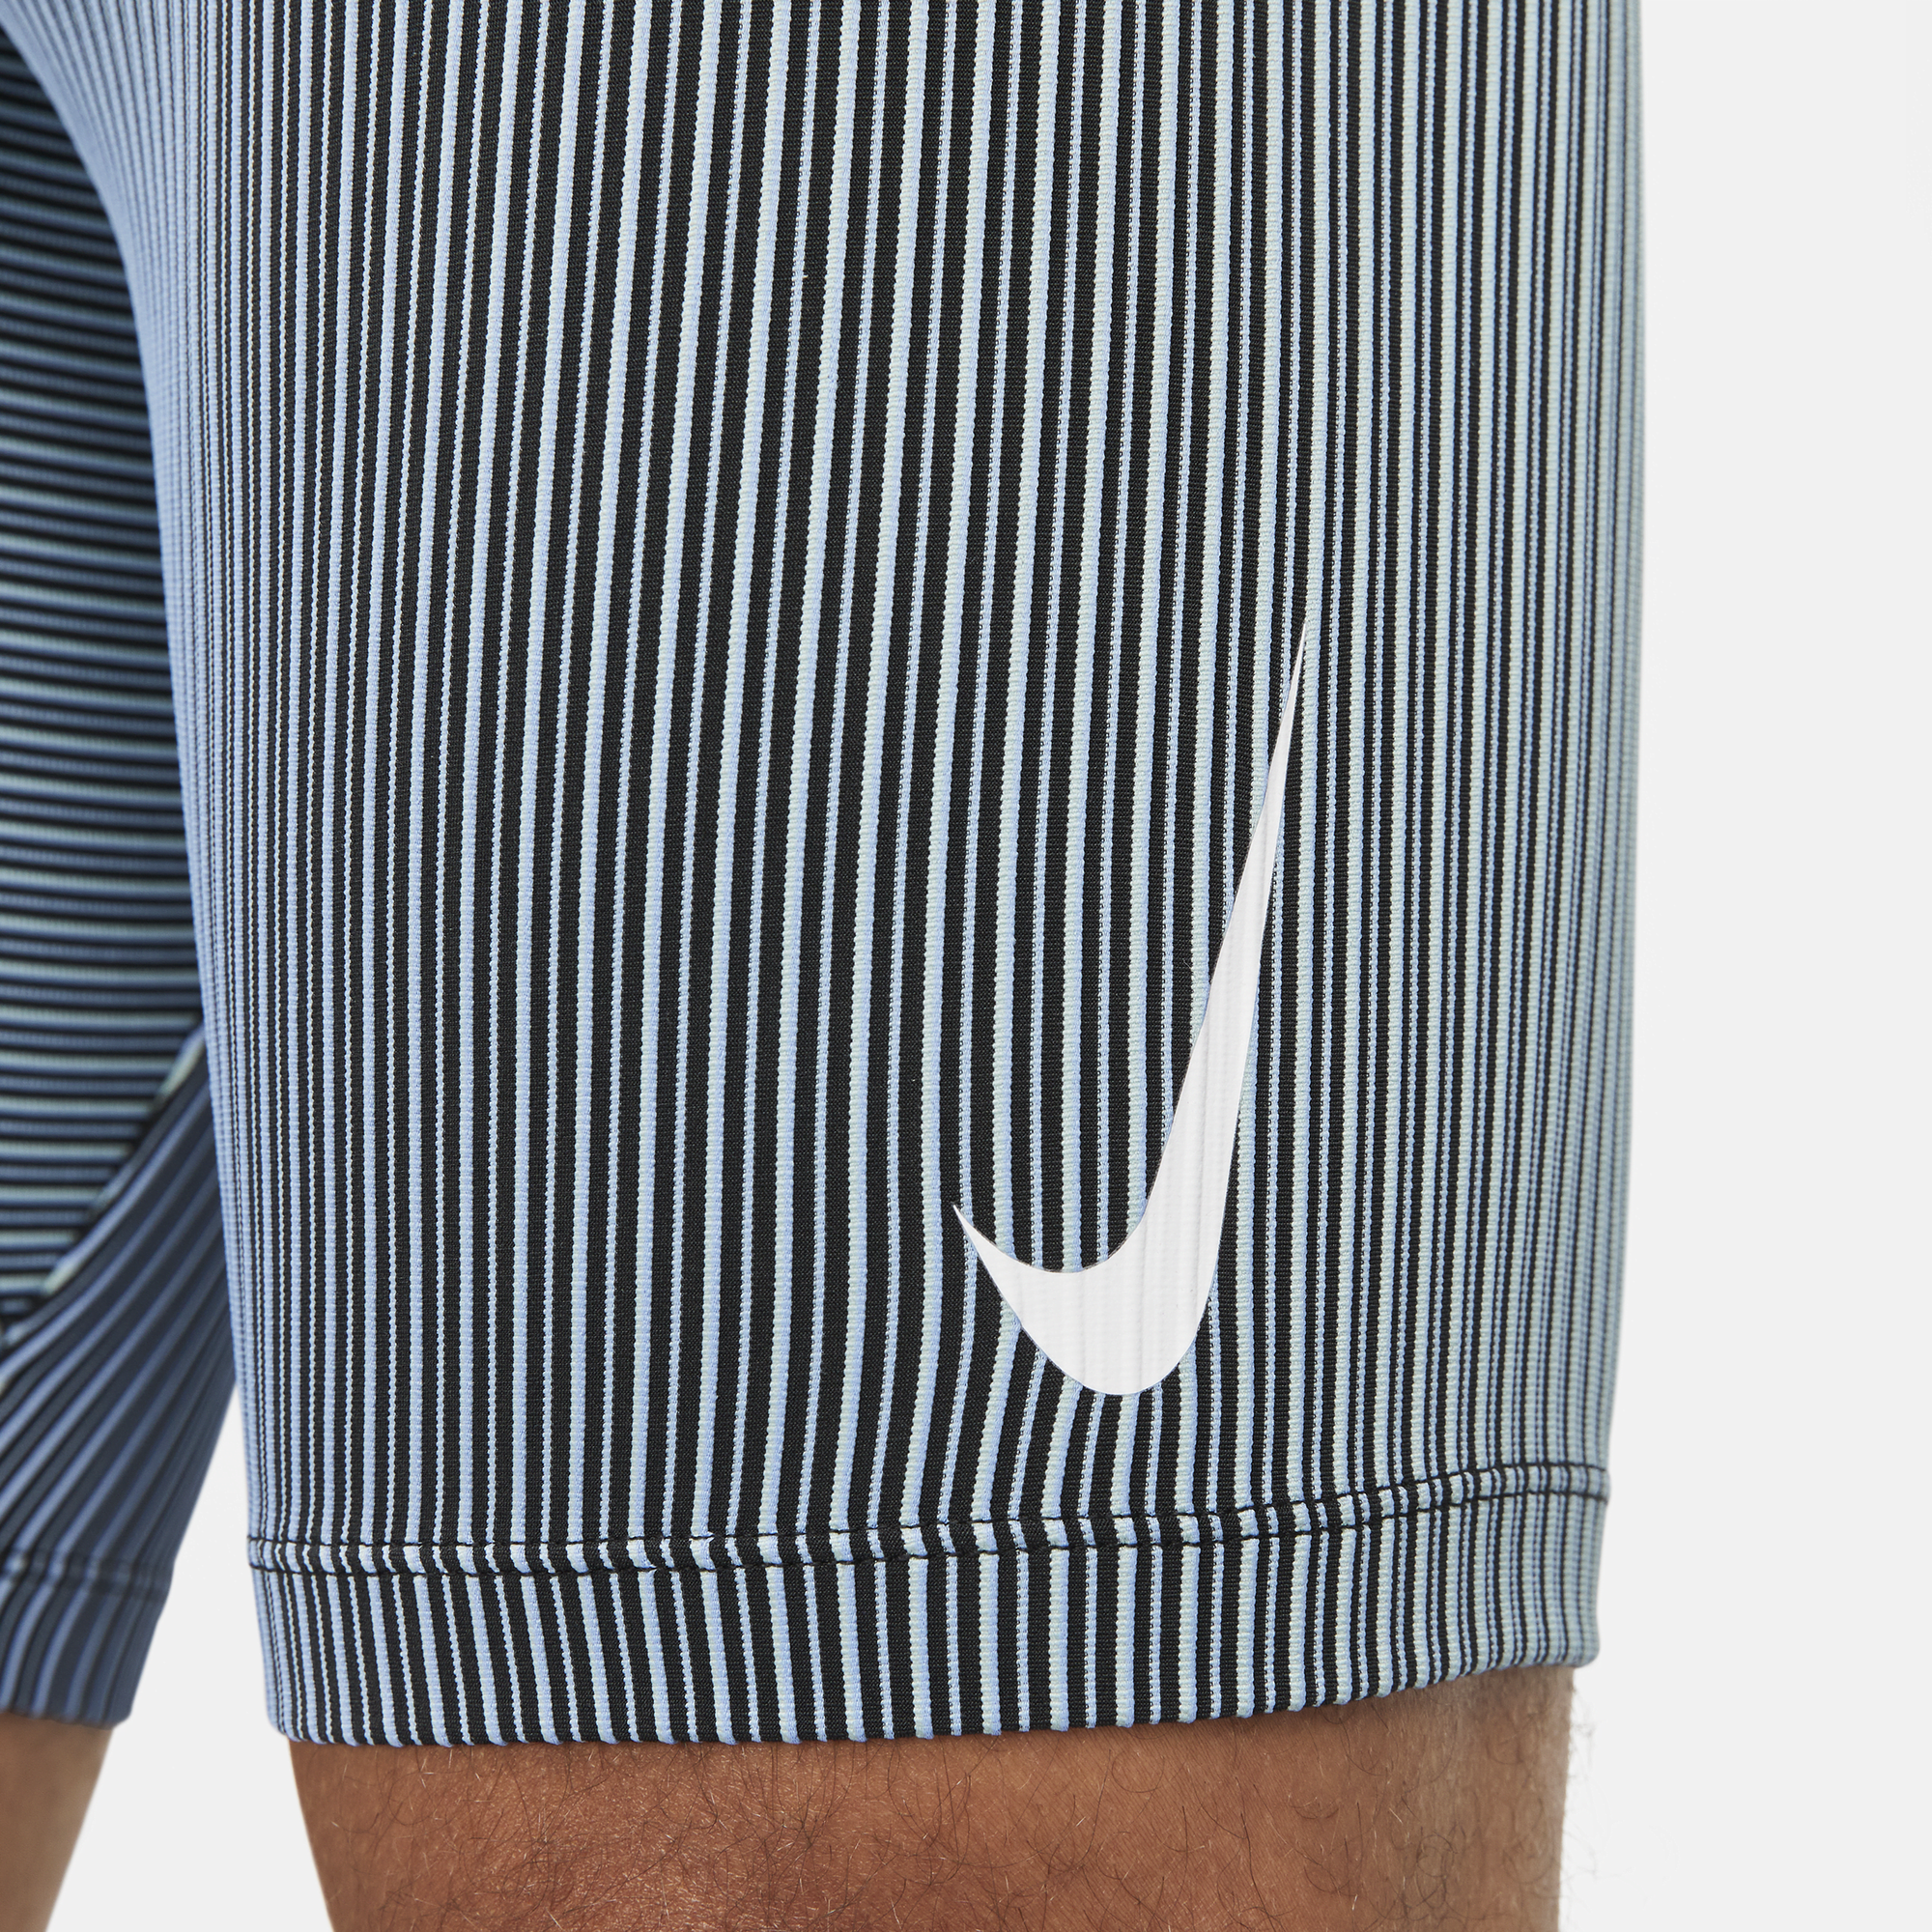 Nike Aeroswift Half Tight, Men's Fashion, Activewear on Carousell